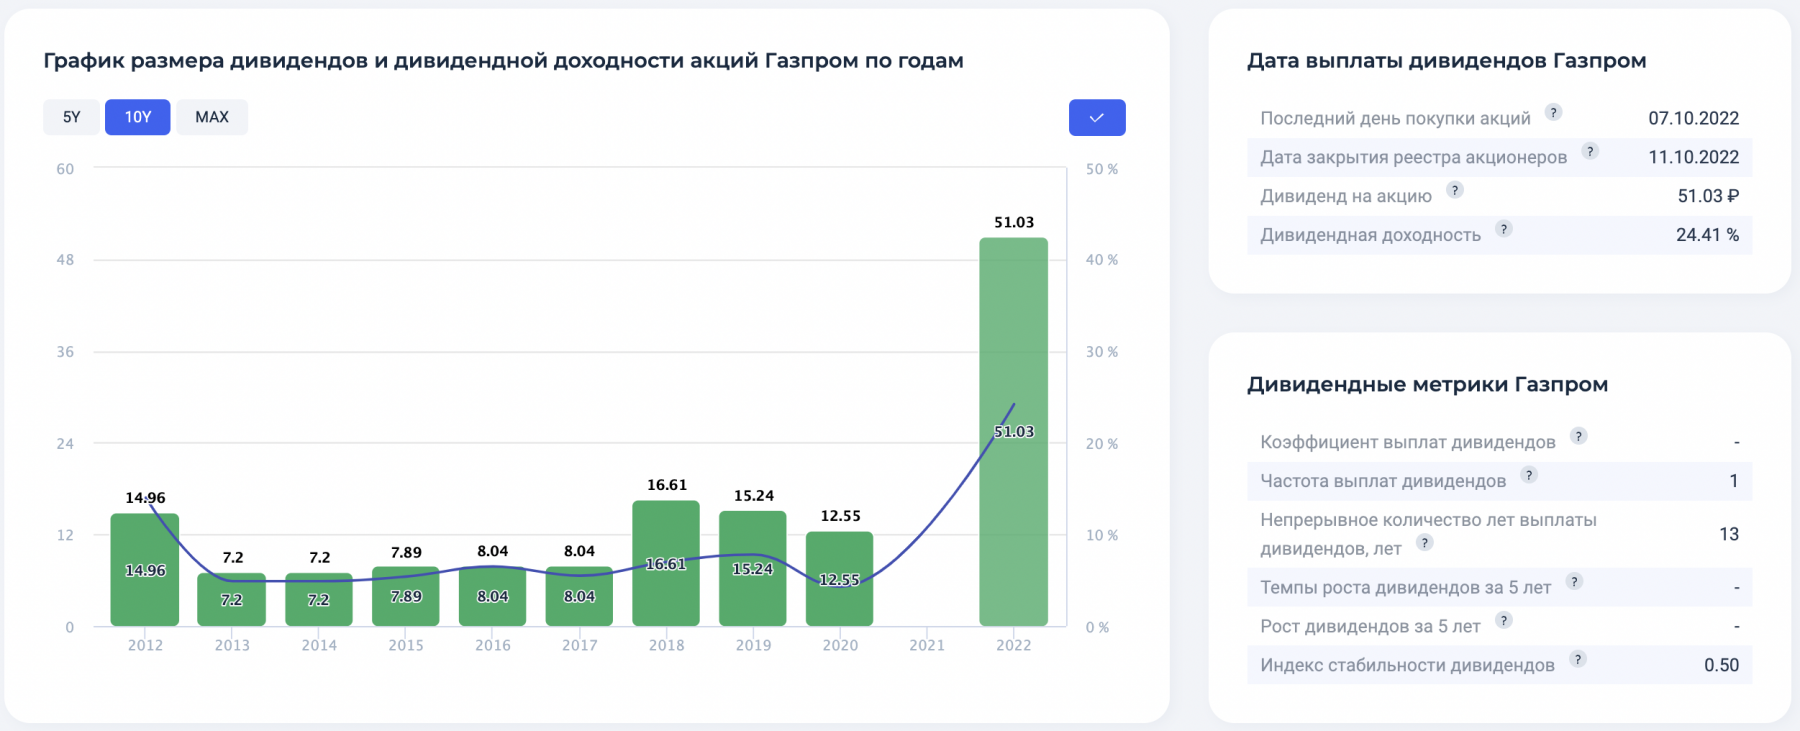 Почему не нужно покупать акции Газпрома перед дивидендами?